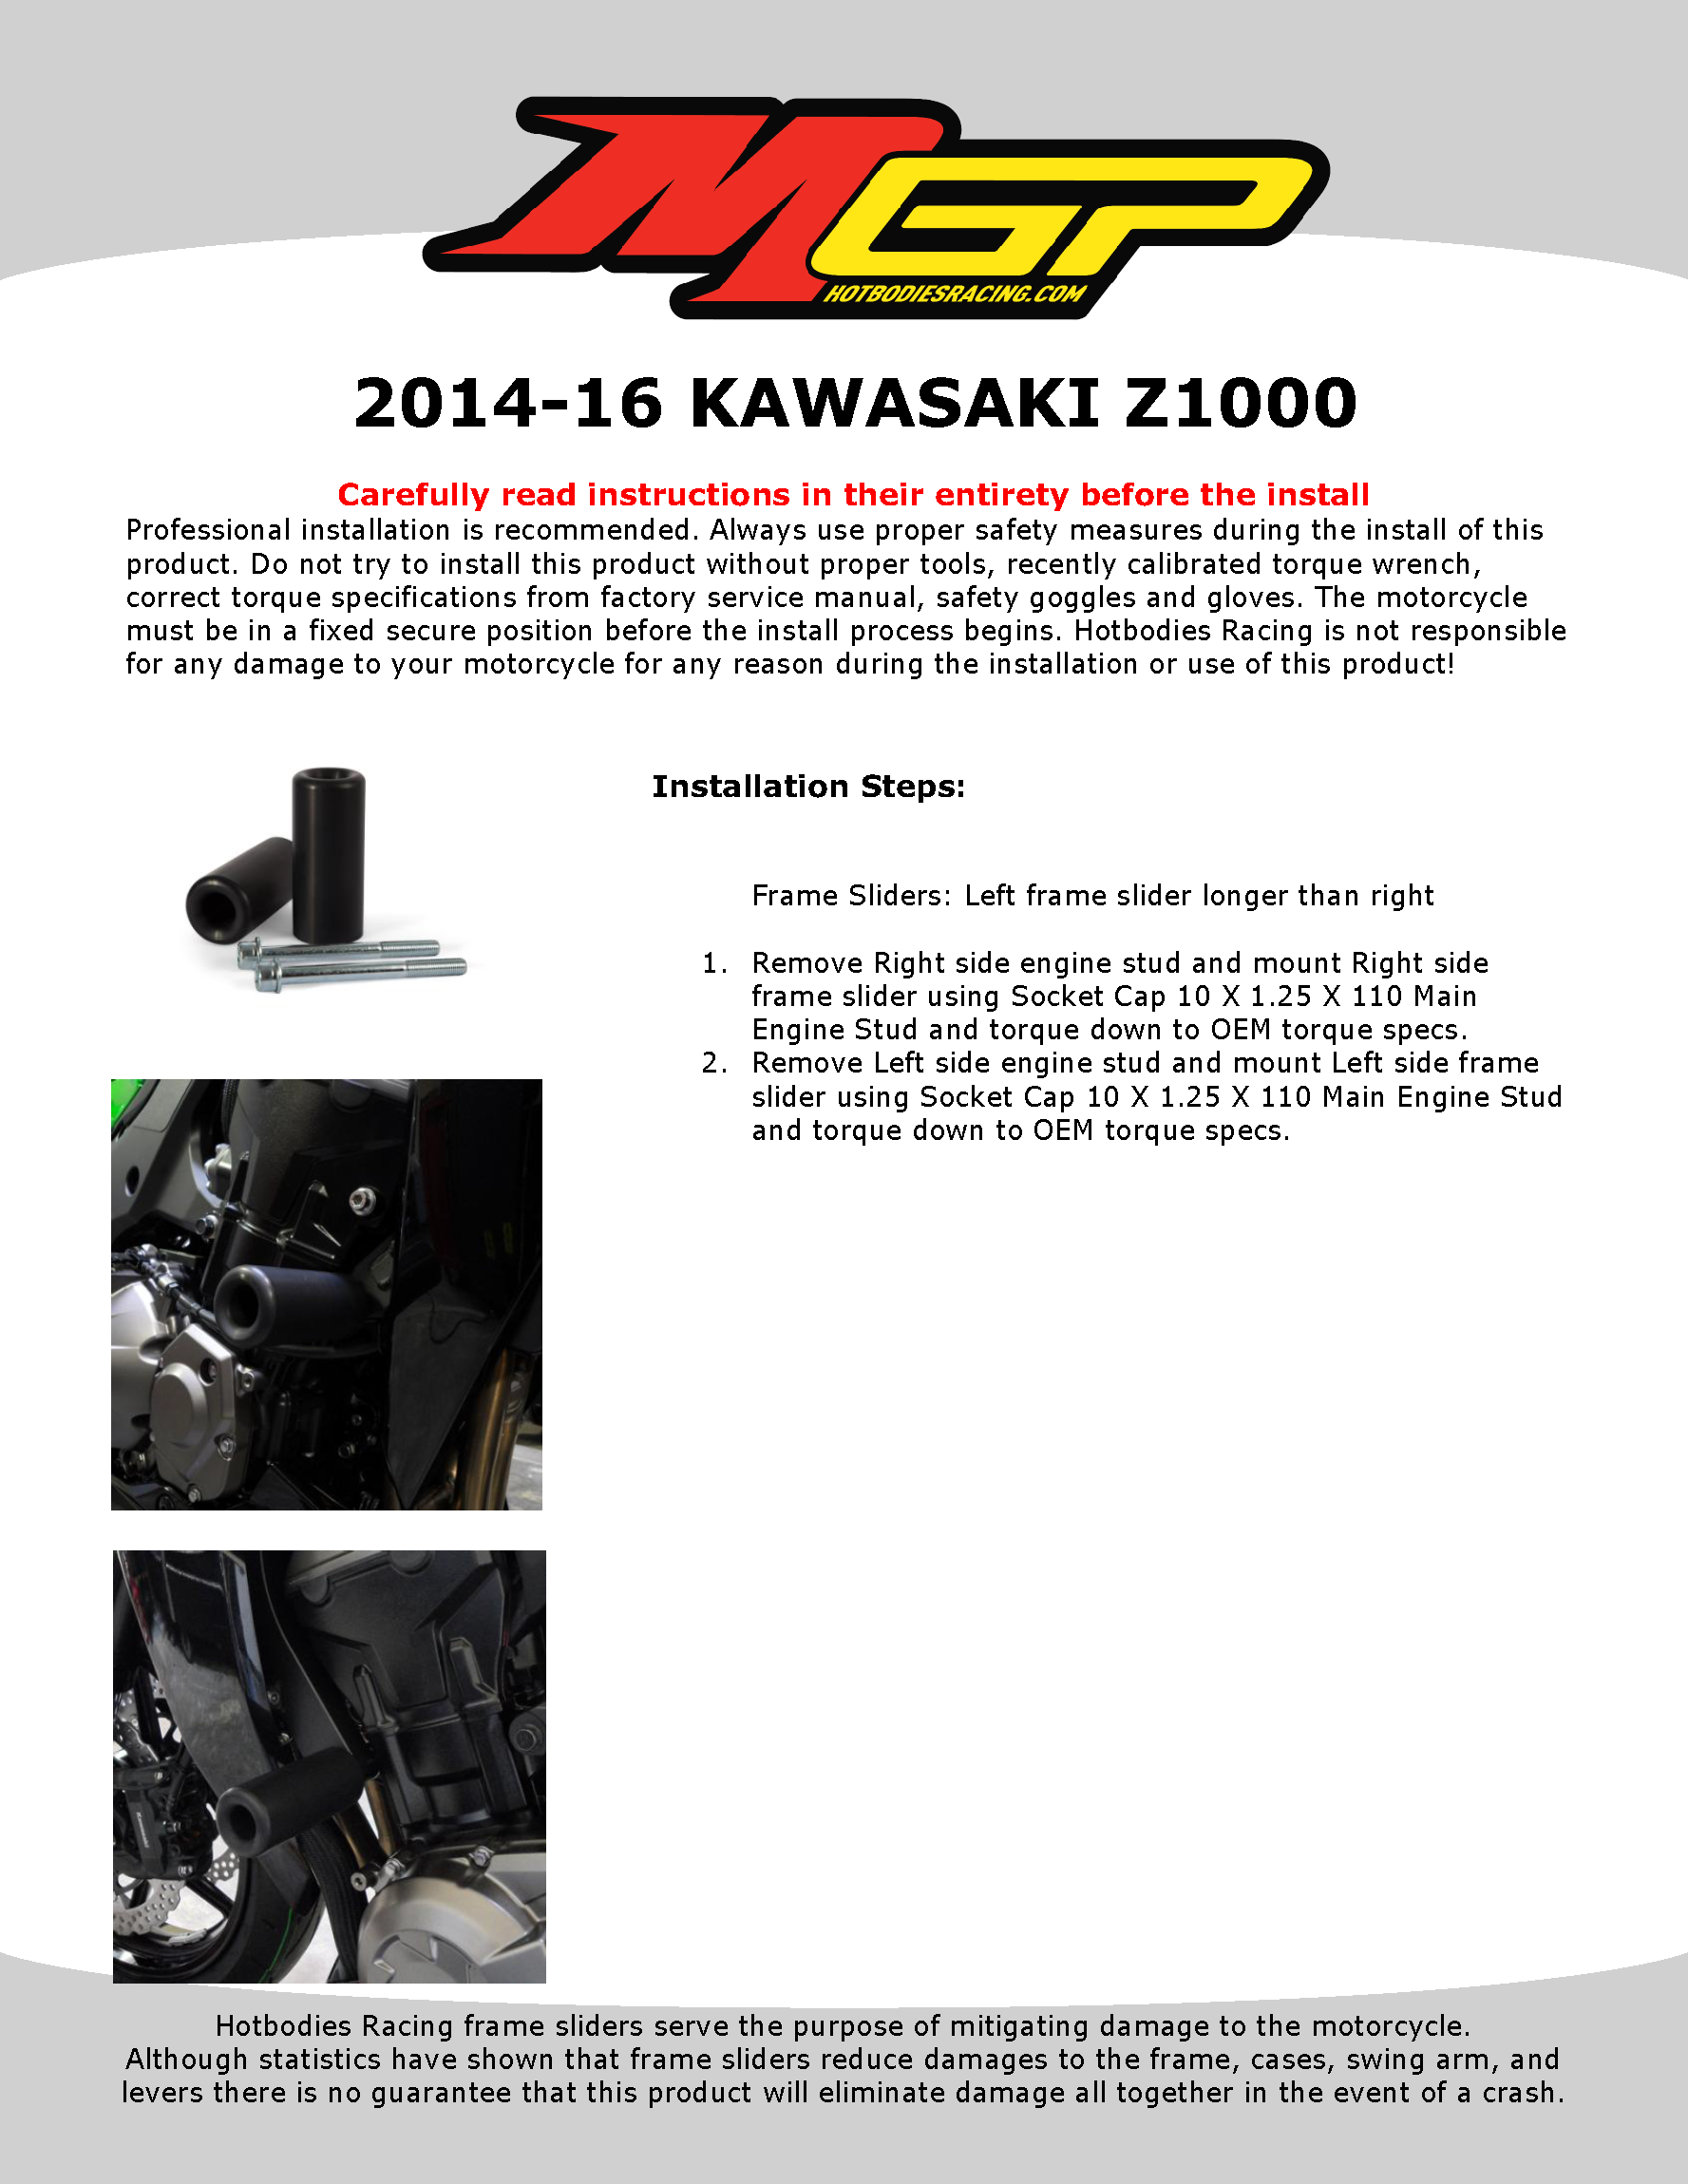 

2014-16 KAWASAKI Z1000

